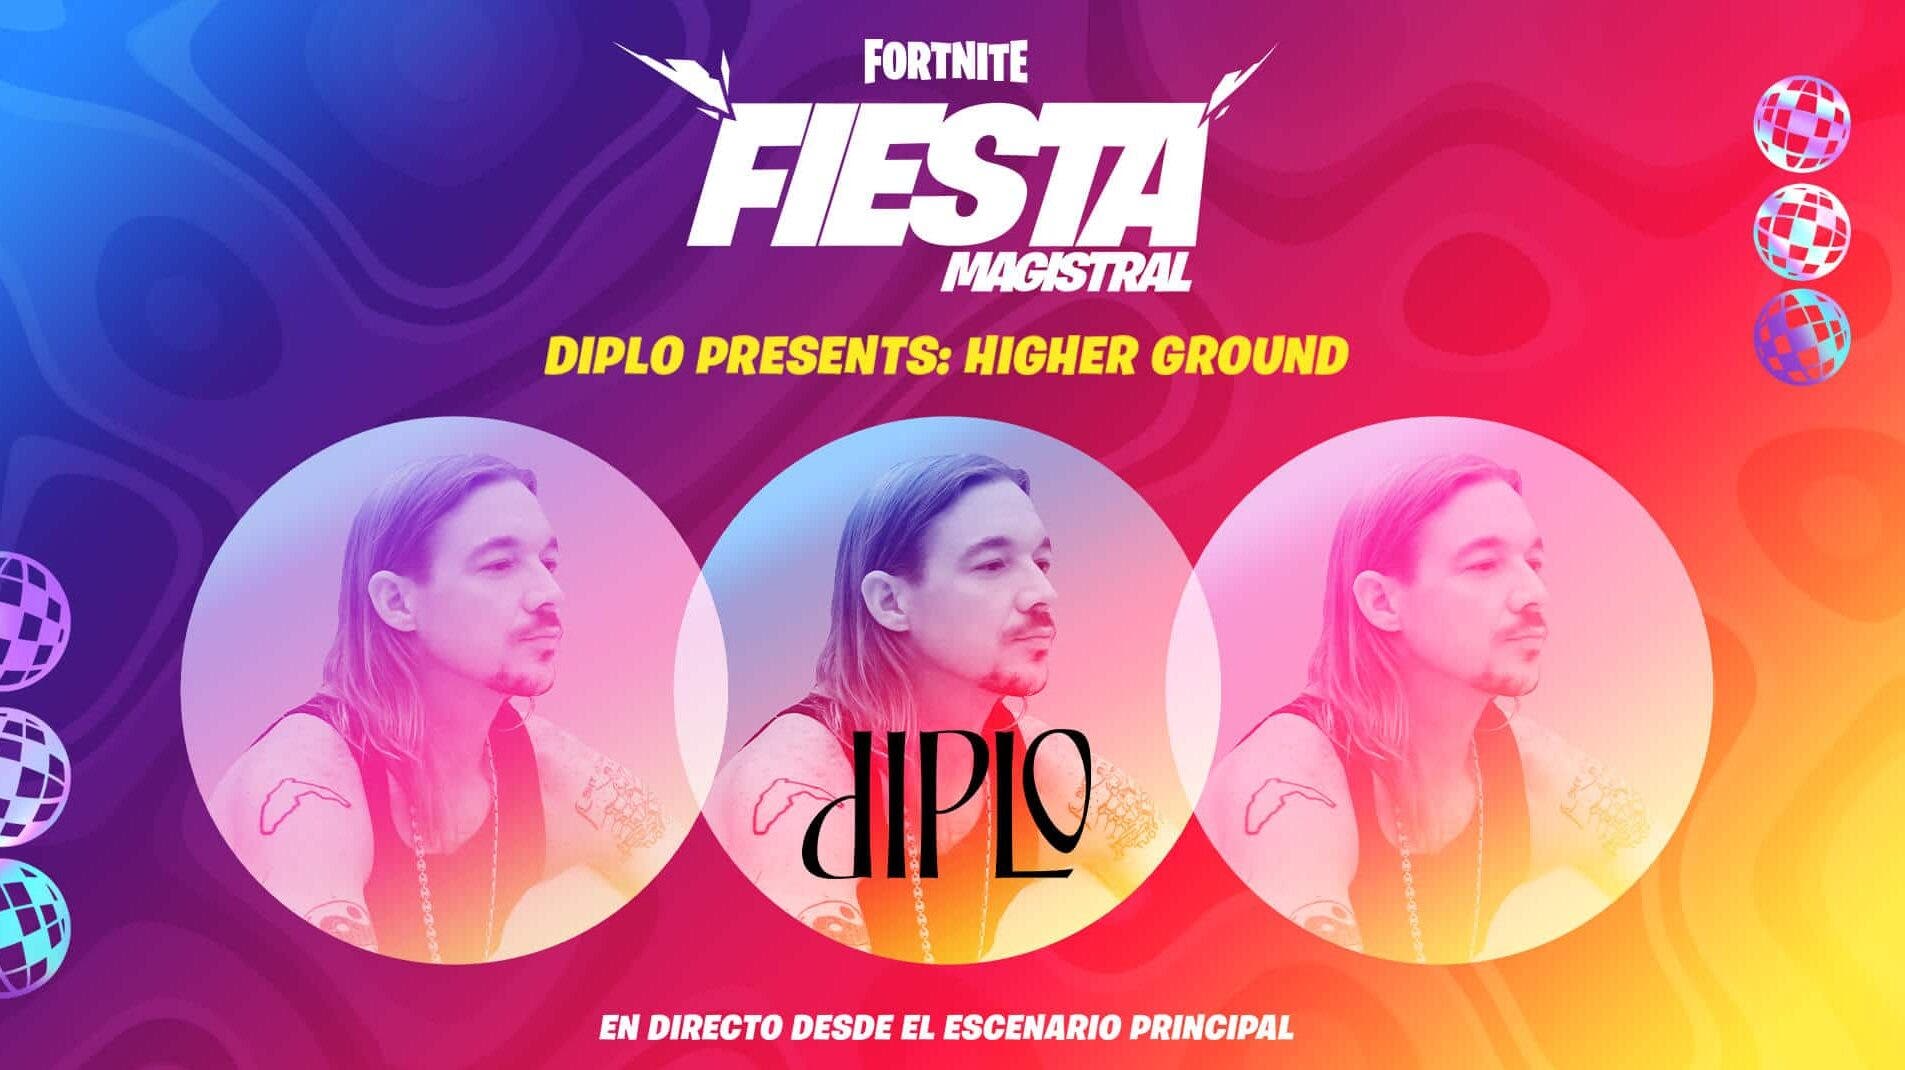 Diplo regresa para la próxima Fiesta magistral de Fortnite con la actuación en directo Diplo Presents: Higher Ground